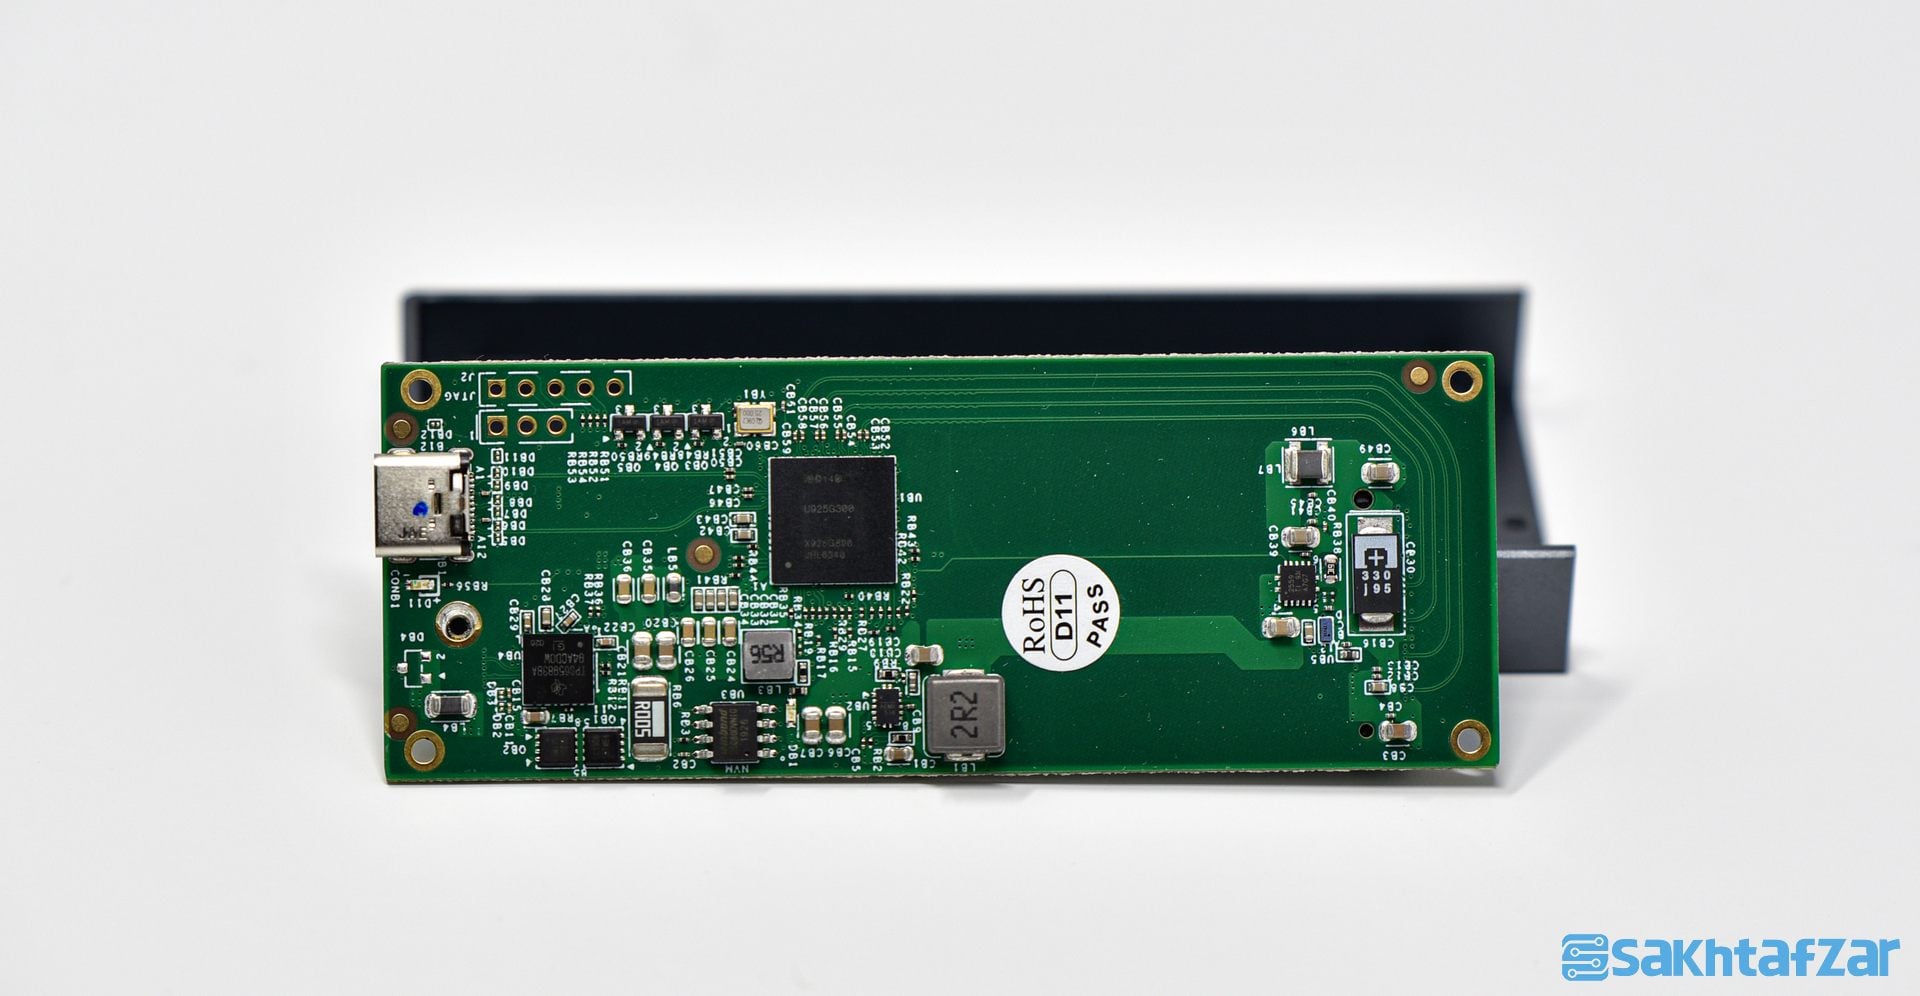 بررسی باکس Thunderbolt 3 NVME M.2 SSD و درایو NVME M.2 SSD V500 جدید شرکت Orico